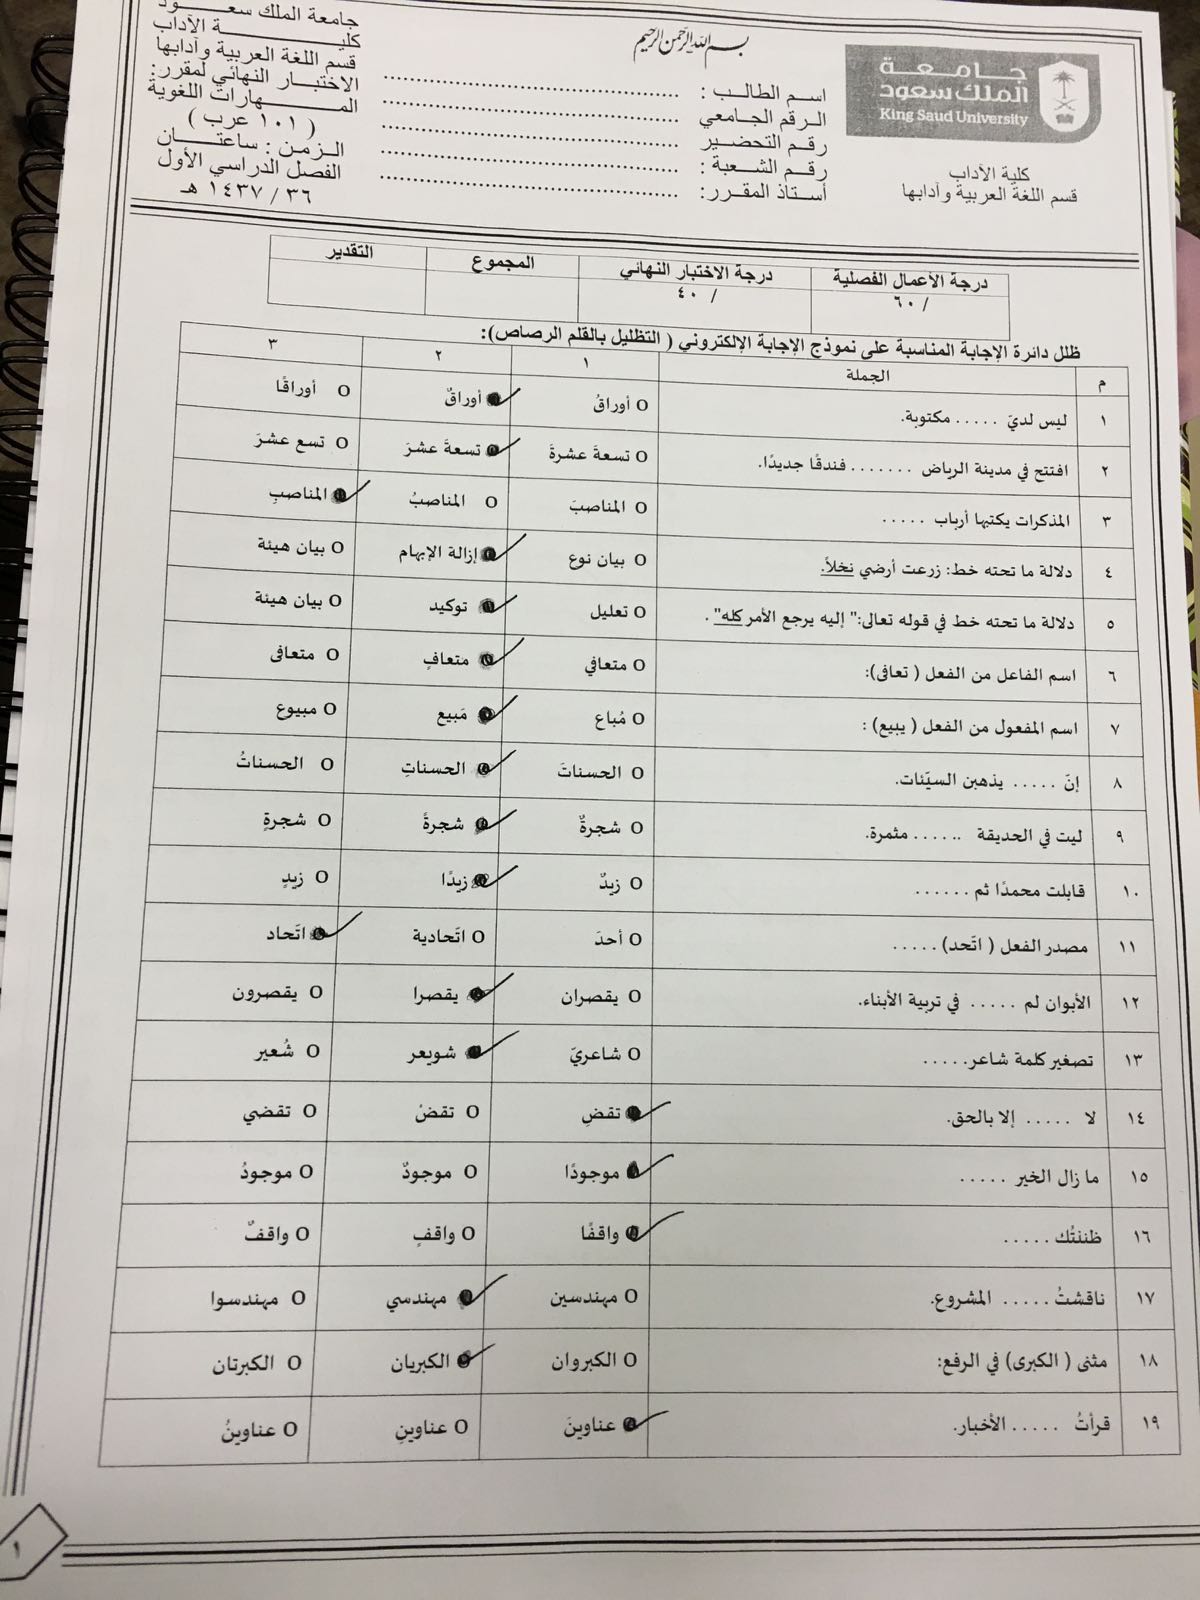 اسئلة عرب 101 المهارات اللغوية الفصل الأول 1437هـ